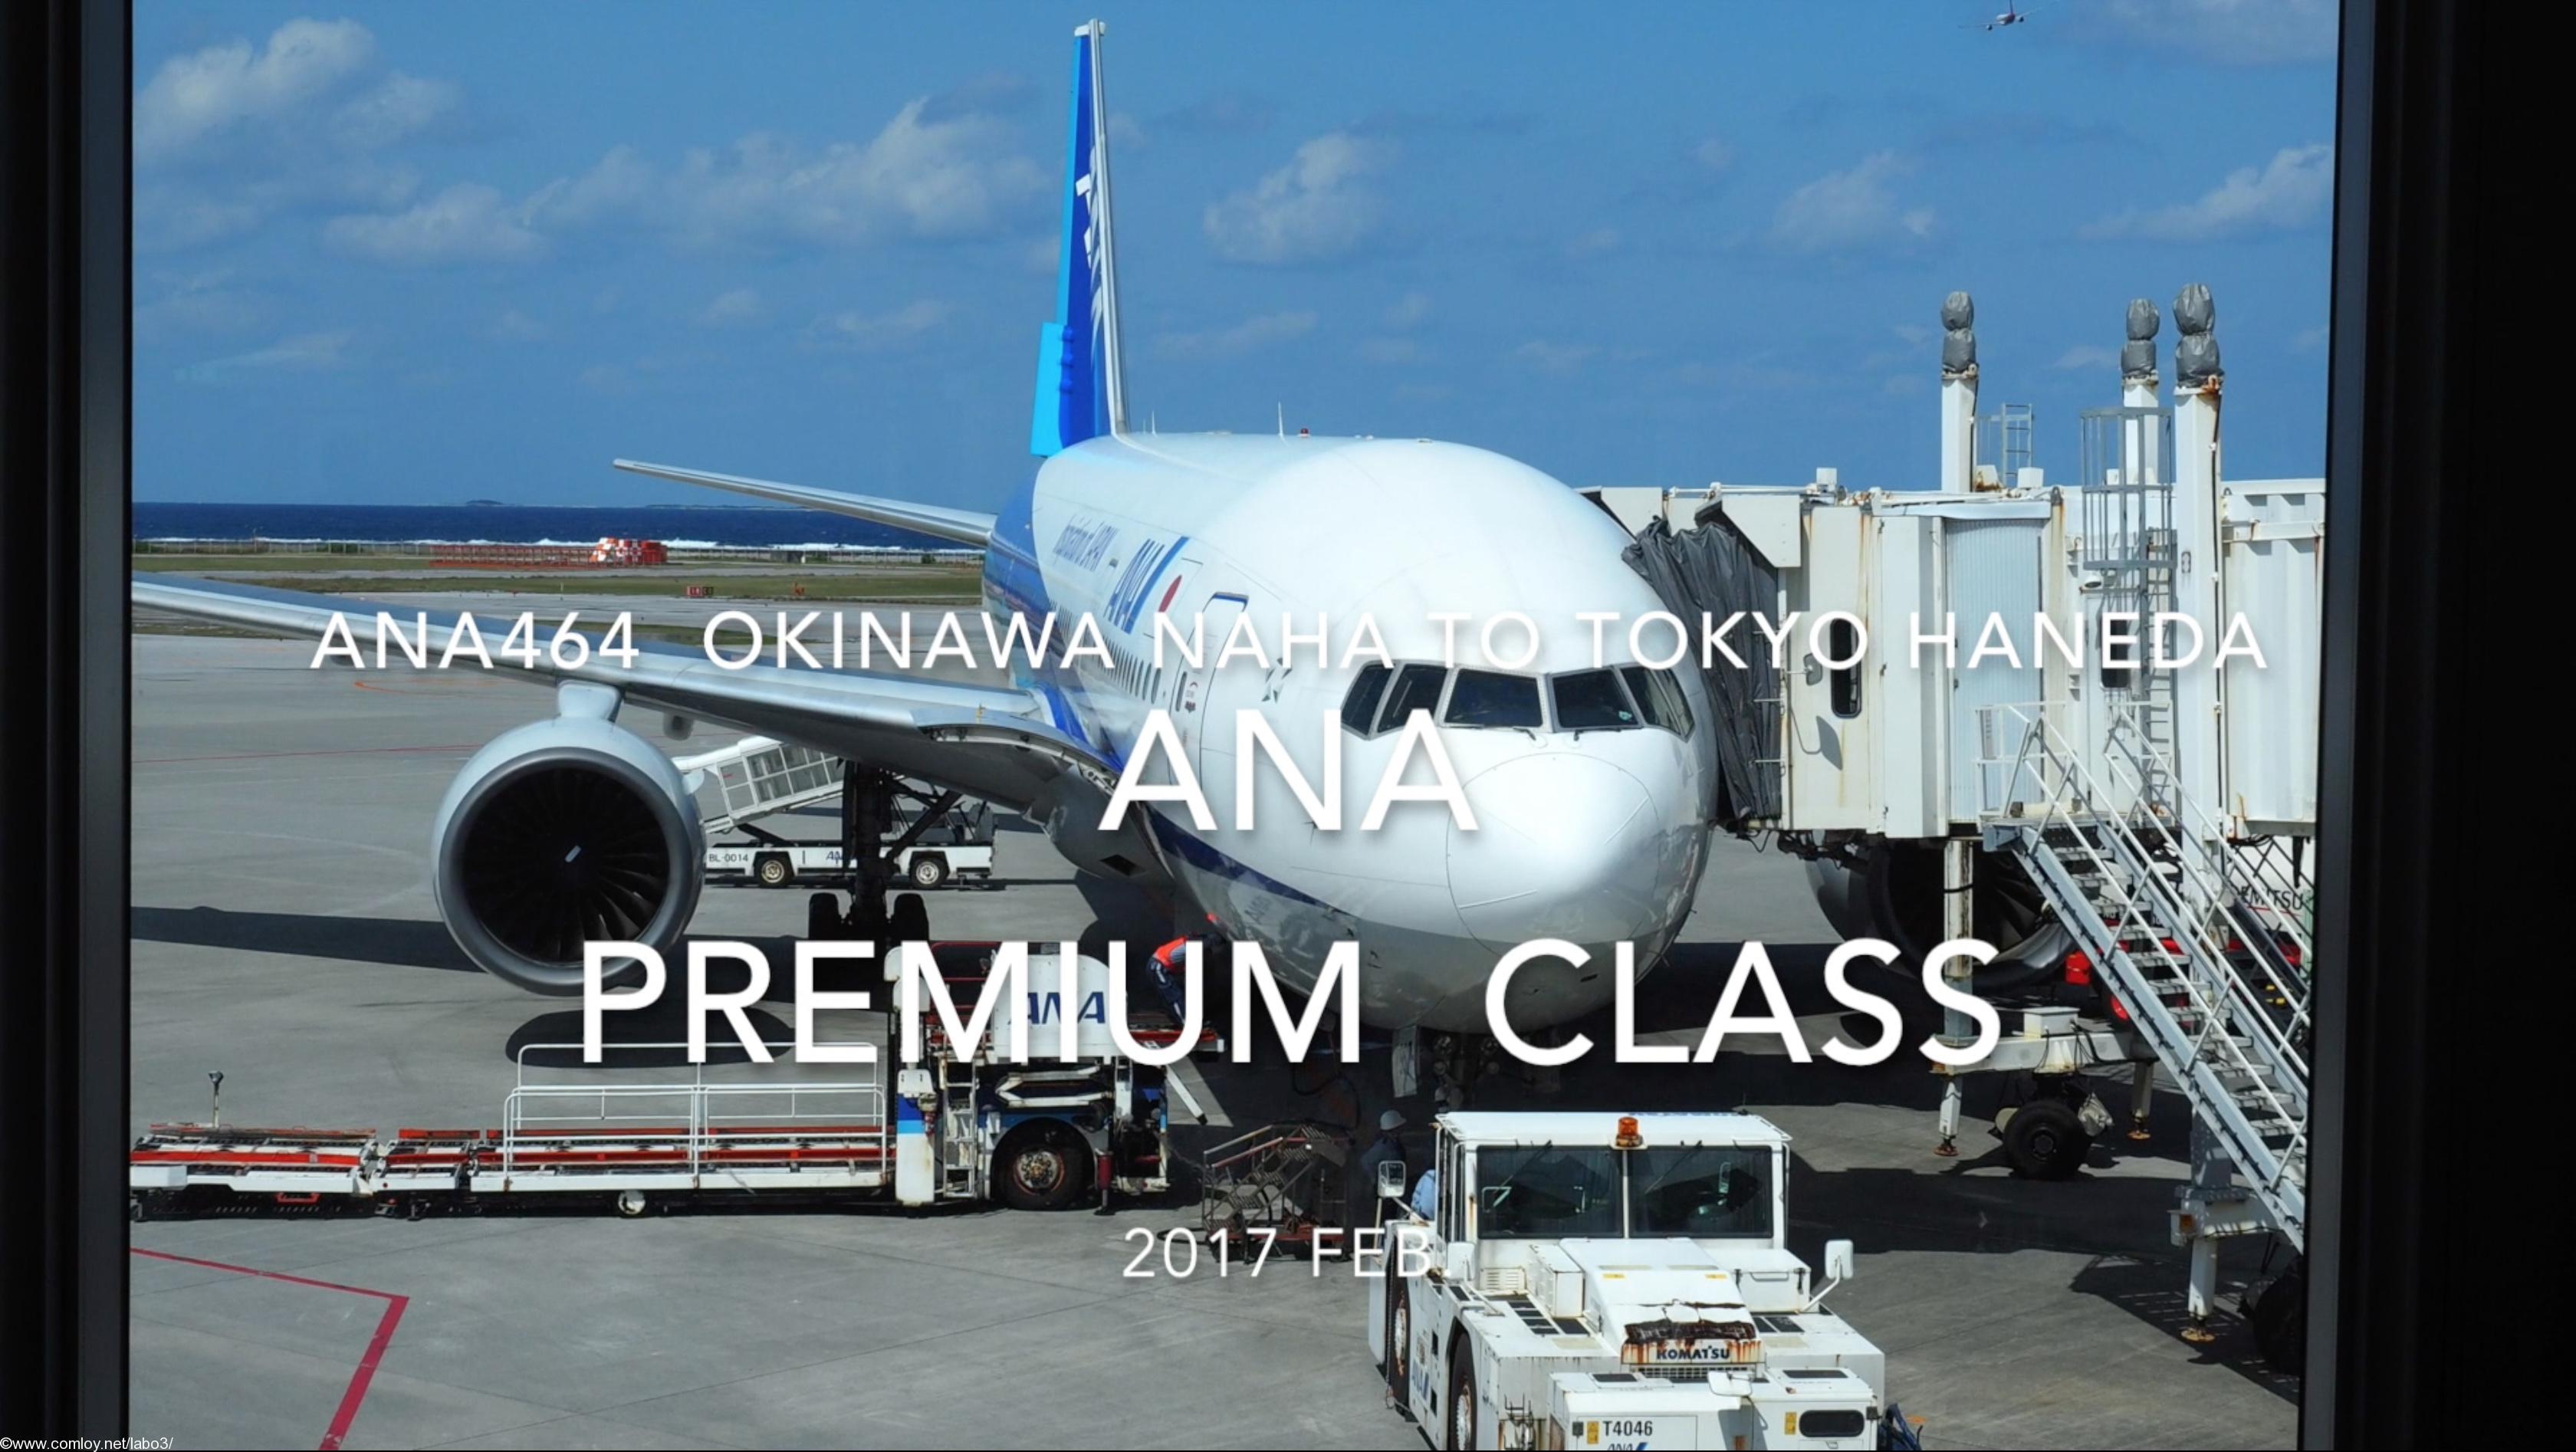 【Flight Report】ANA Premium Class ANA464 OKINAWA NAHA to TOKYO HANEDA 2017・02 全日空プレミアムクラス搭乗記